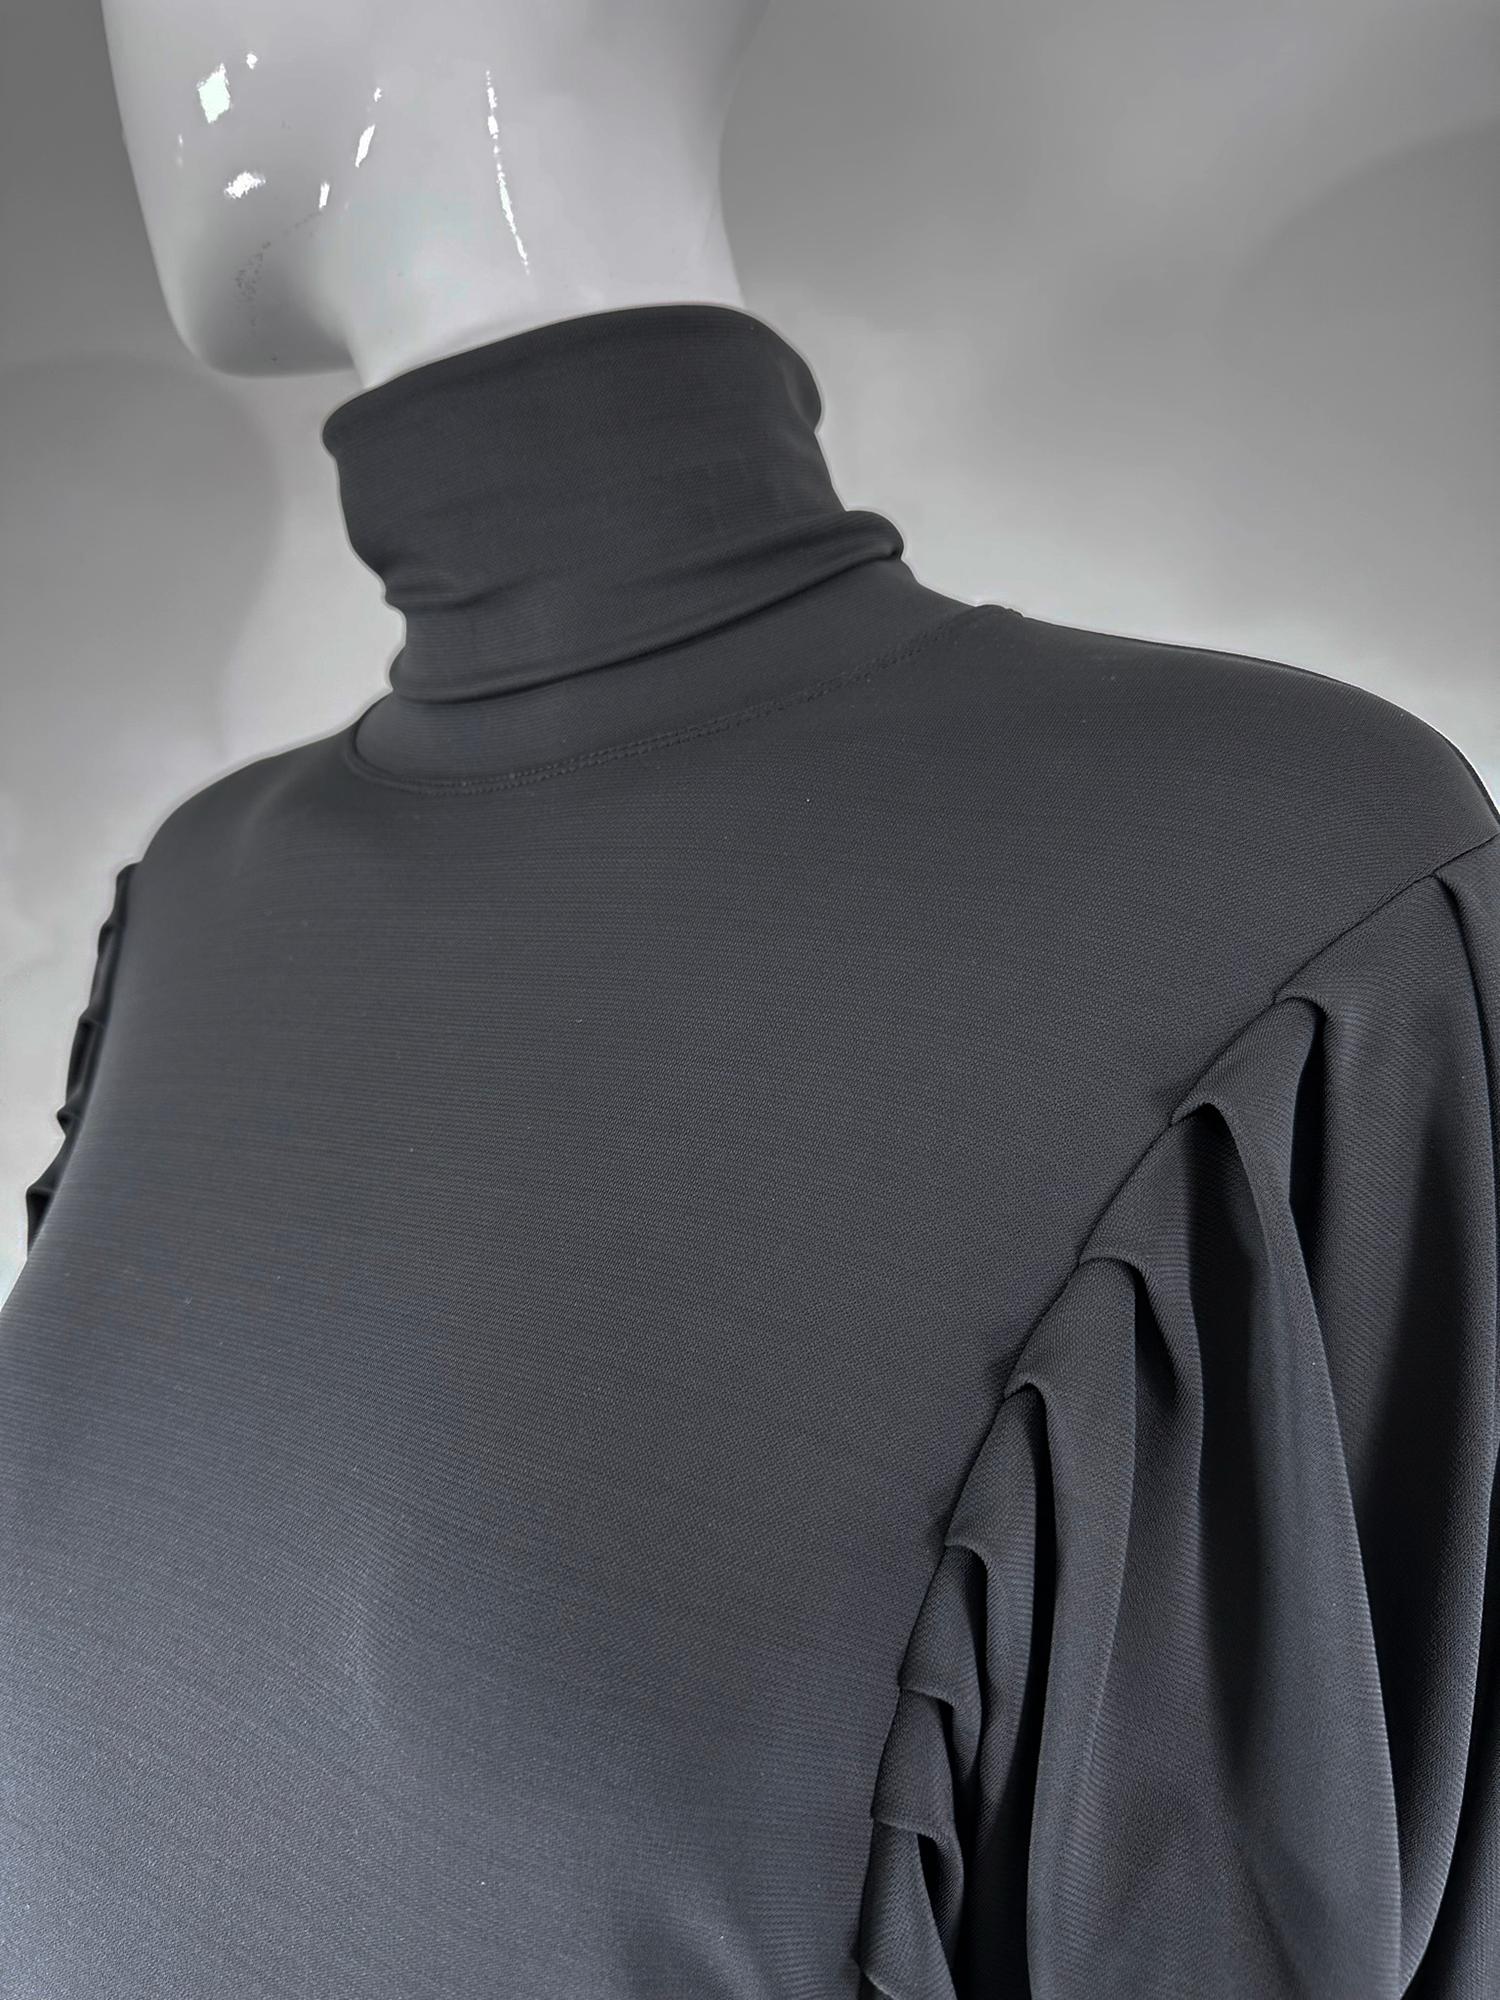 Fendi Silky Black Jersey Pleated Bat Wing Turtle Neck Dress 40 For Sale 9